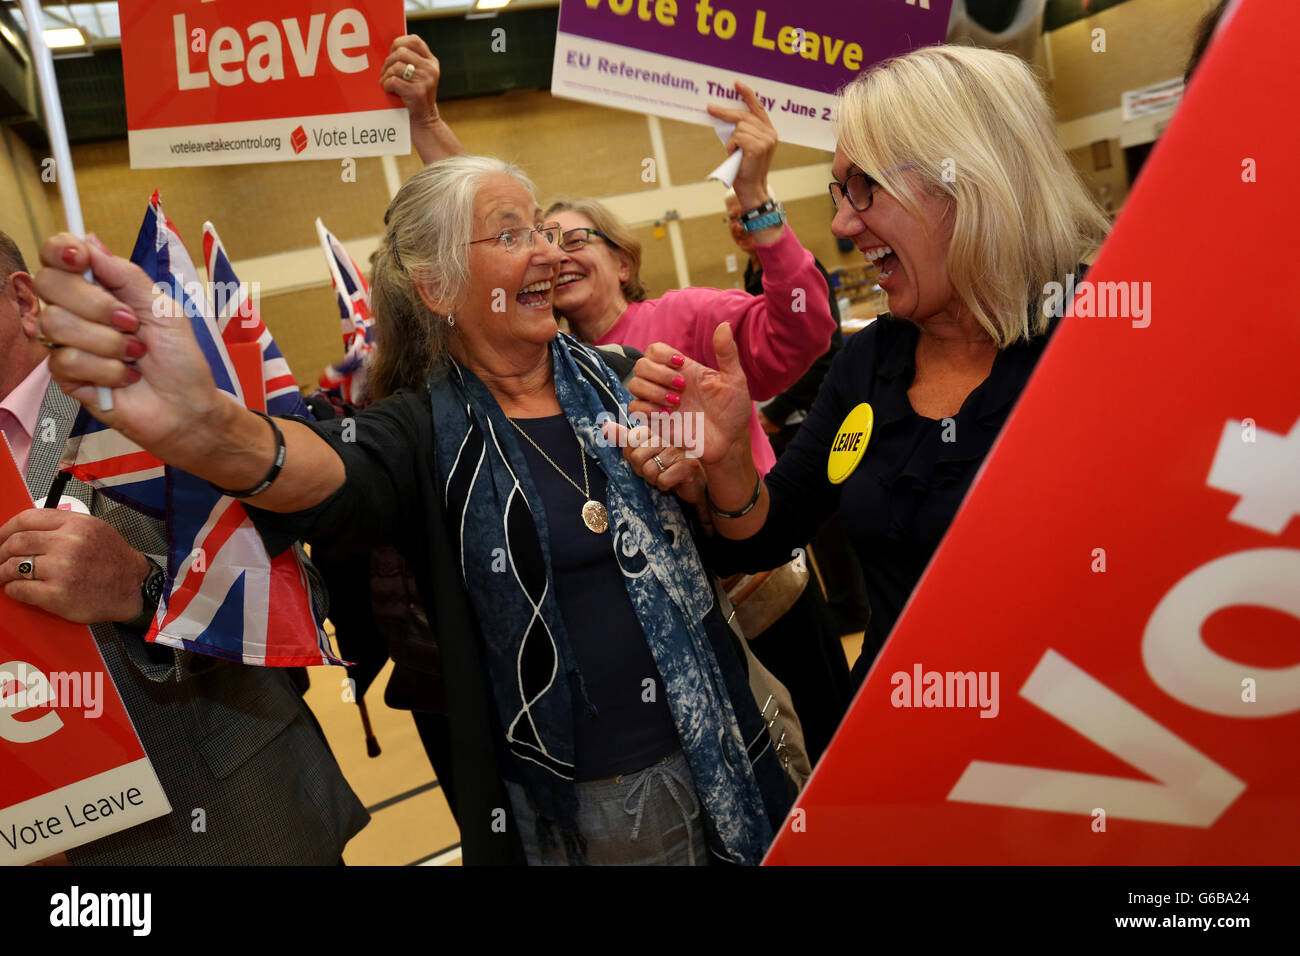 Bognor Regis, RU. 24 de junio de 2016. EU Referendum - En la foto está el referéndum sobre la UE Resultado de recuento por Arun (incluyendo Bognor Regis) en el centro de ocio de Arun, West Sussex, Reino Unido. Dejar gana con 62,5% contra 37,5% de permanecer. Viernes 24 de junio de 2016. Crédito: Sam Stephenson / Alamy Live News. 24/06/16 Crédito: Sam Stephenson/Alamy Live News Foto de stock